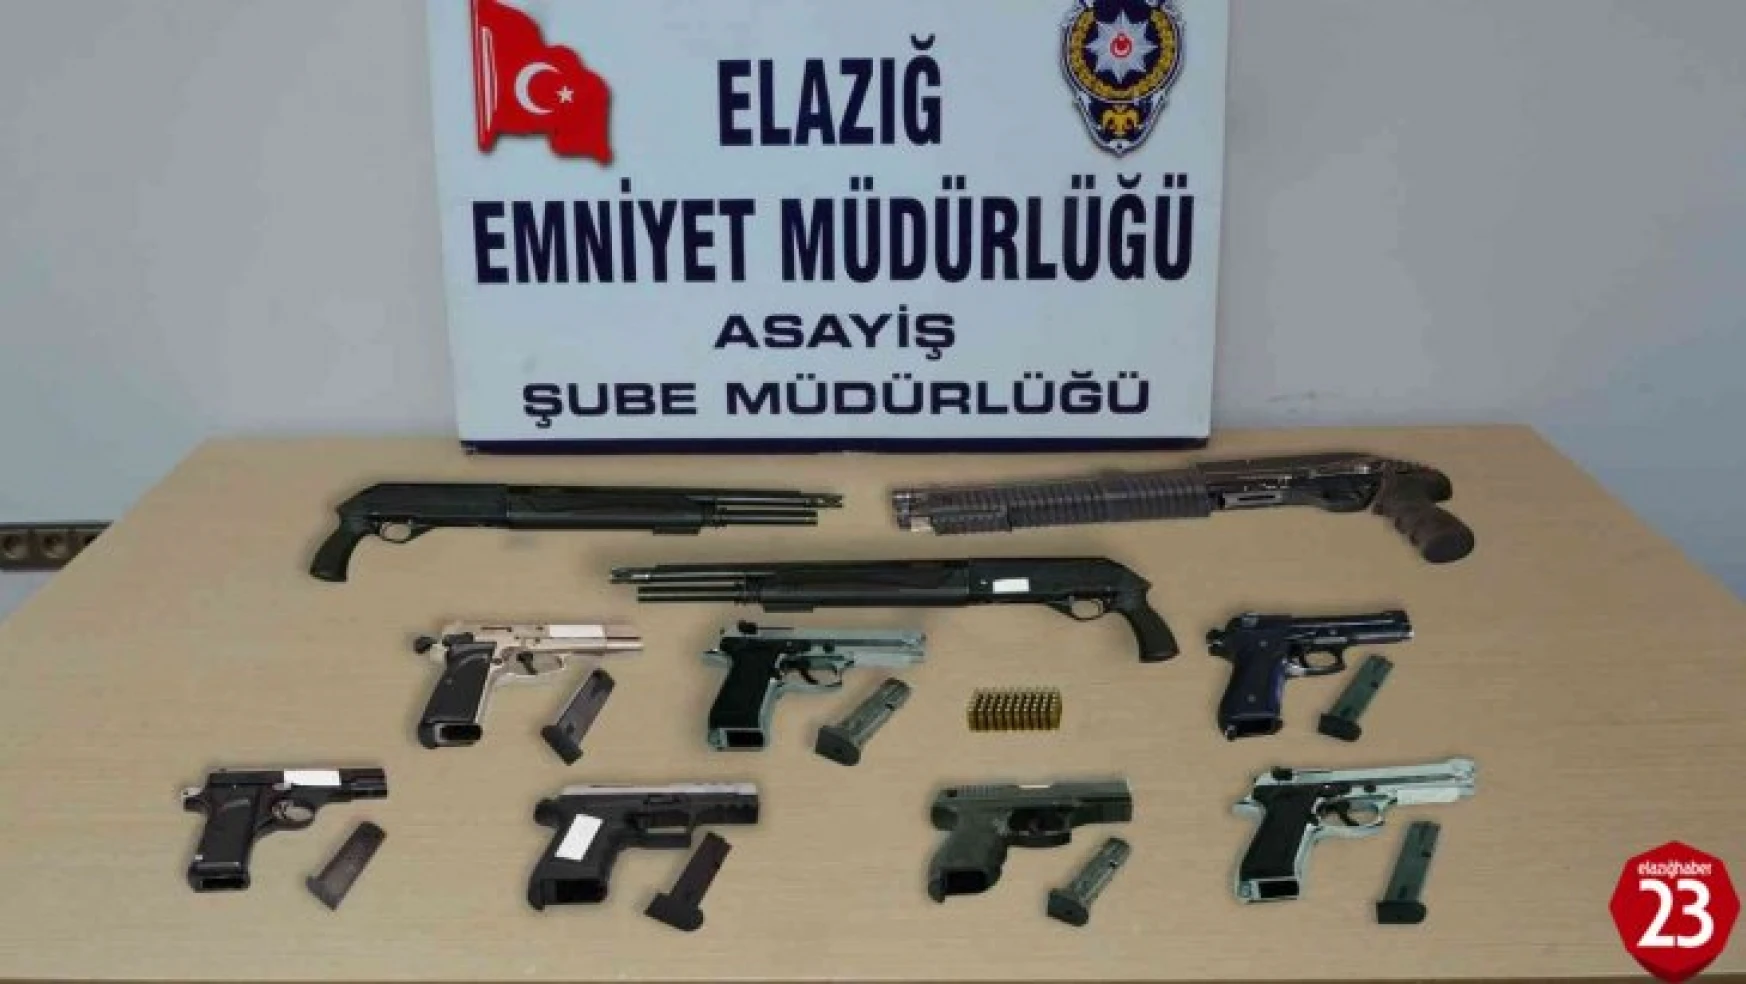 Elazığ'da asayiş ve şok uygulamaları: 28 kişi tutuklandı